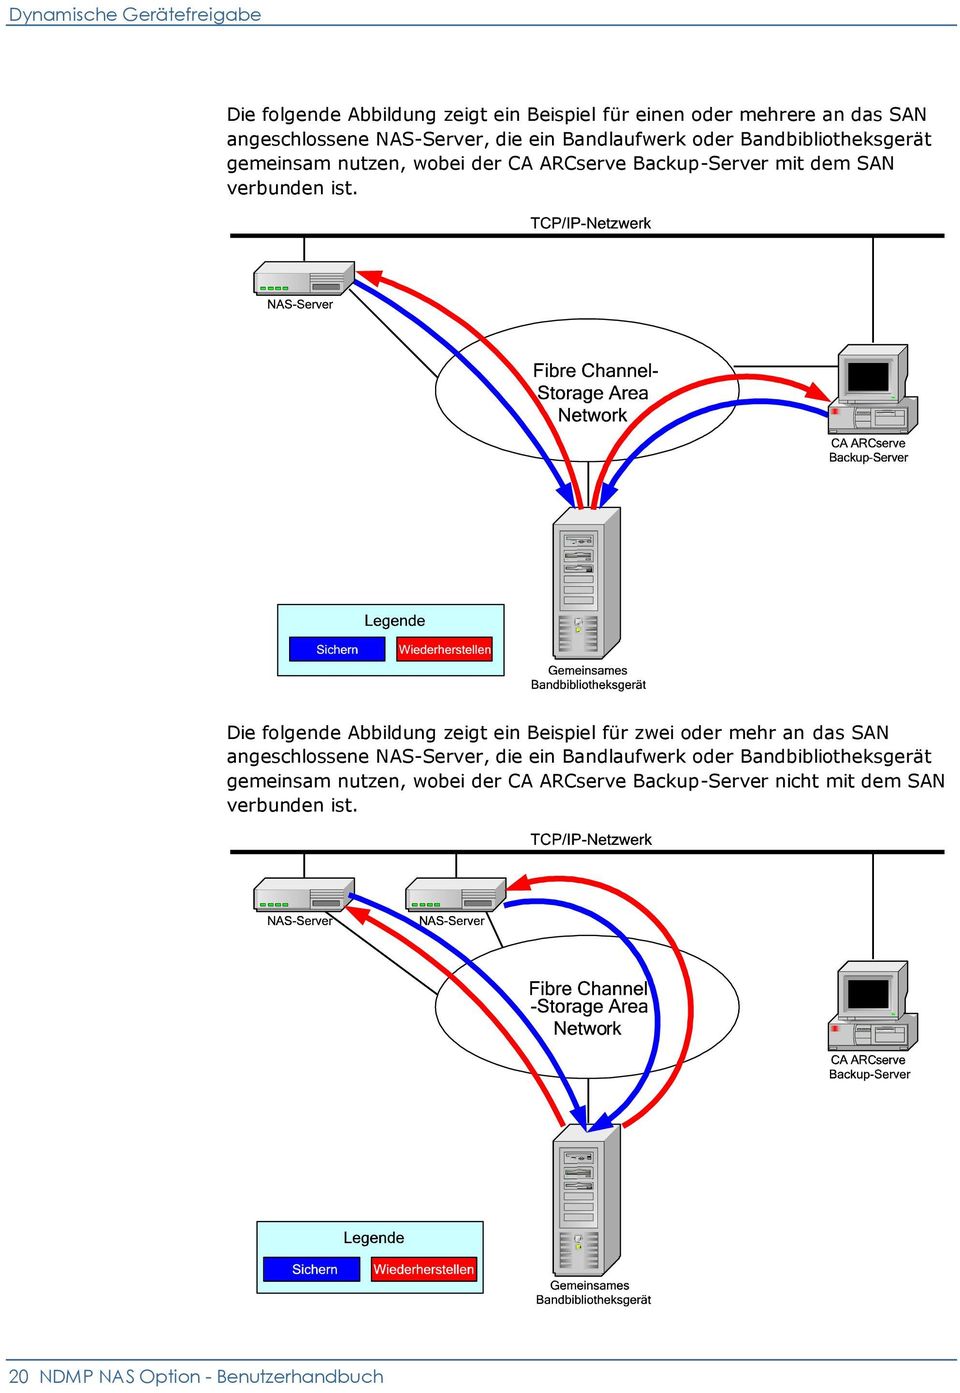 Die folgende Abbildung zeigt ein Beispiel für zwei oder mehr an das SAN angeschlossene NAS-Server, die ein Bandlaufwerk oder